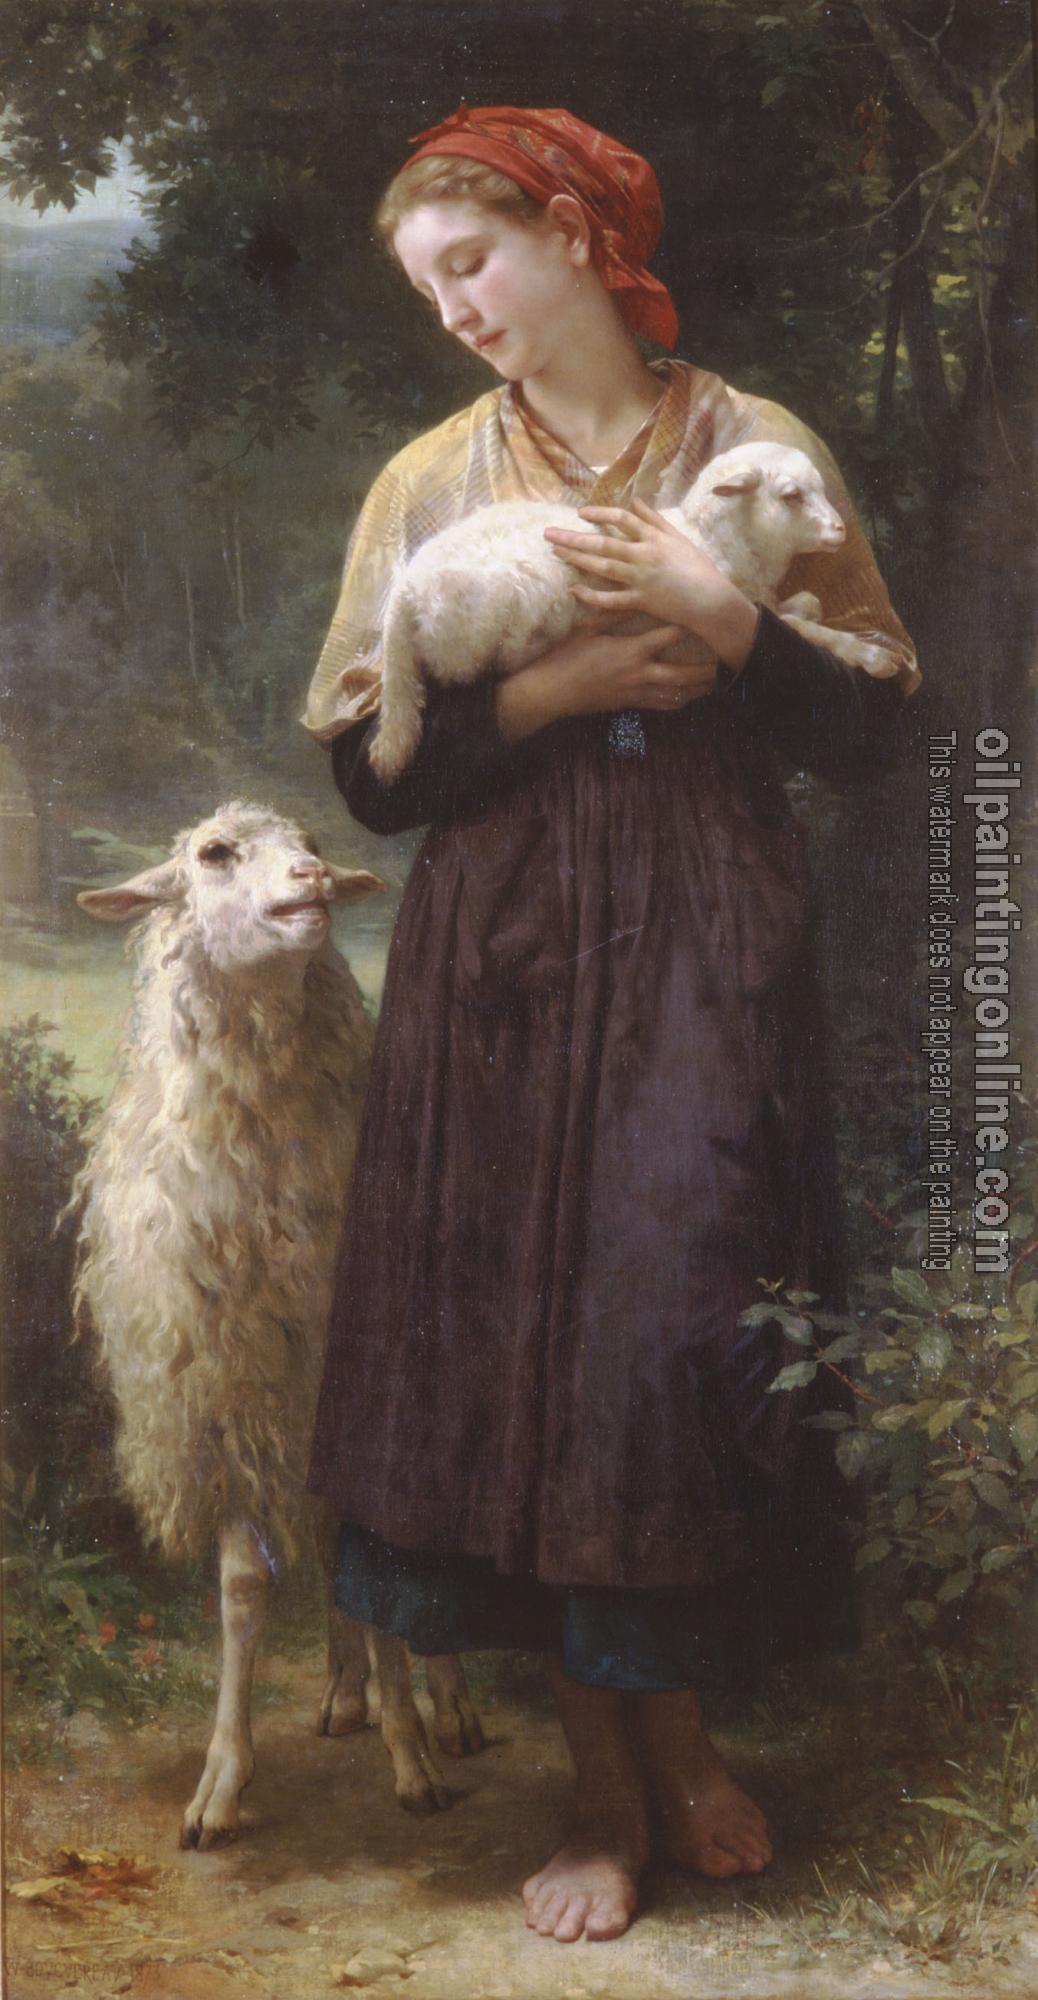 Bouguereau, William-Adolphe - L'agneau nouveau-ne( The Newborn Lamb)